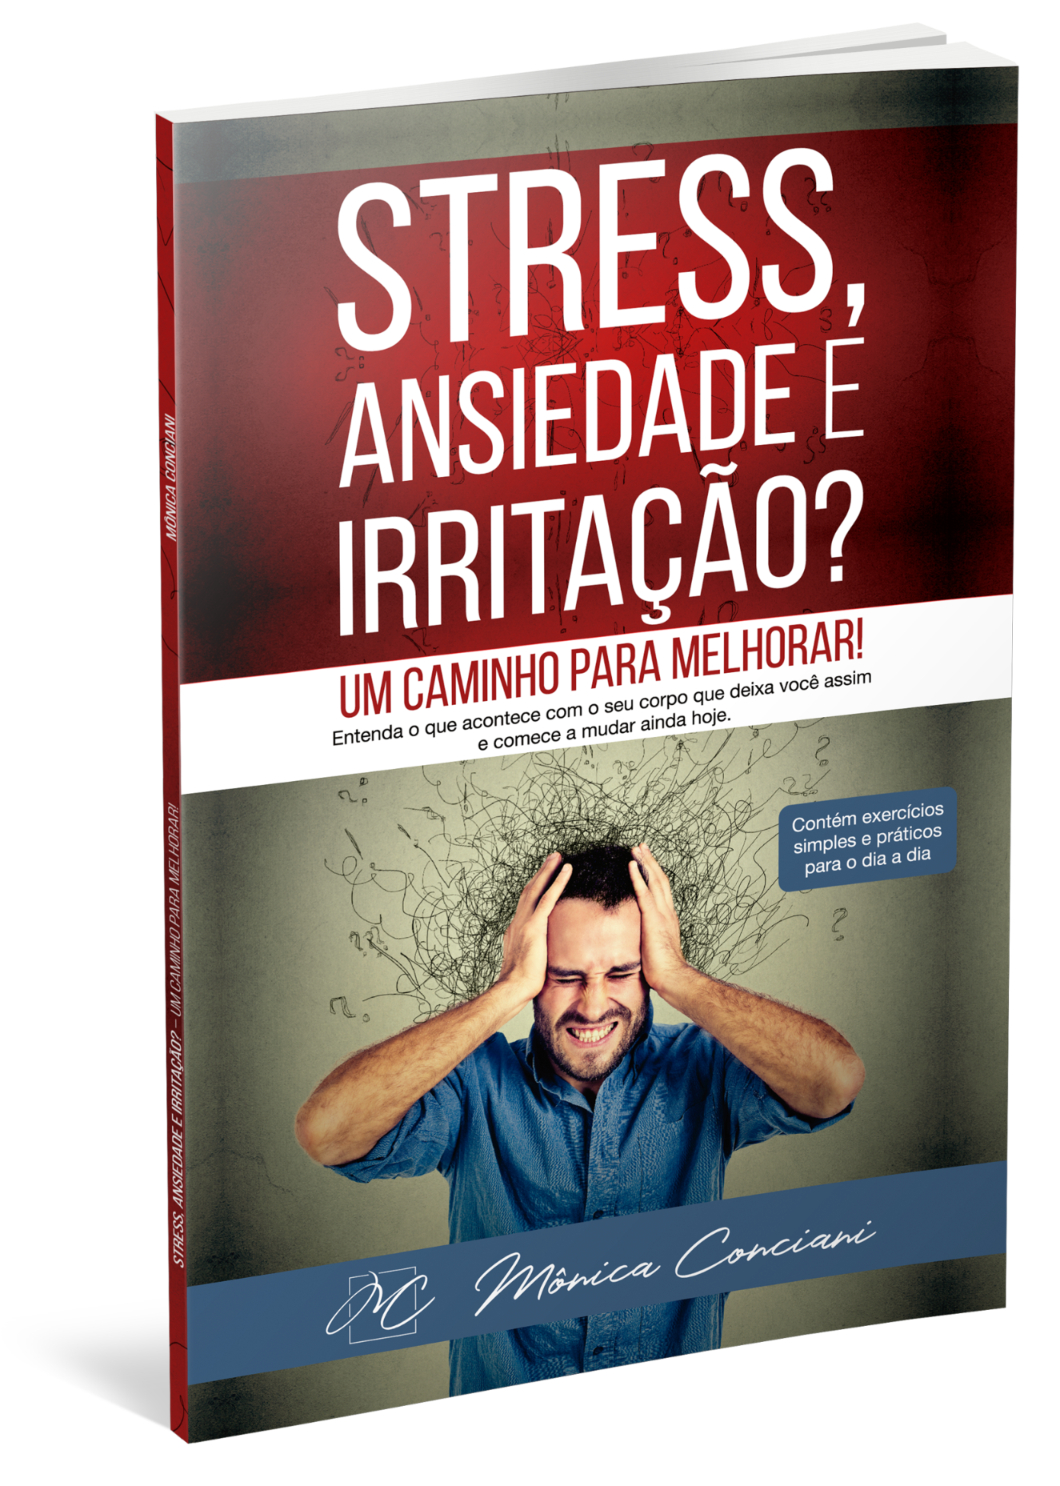 Livro sobre stress